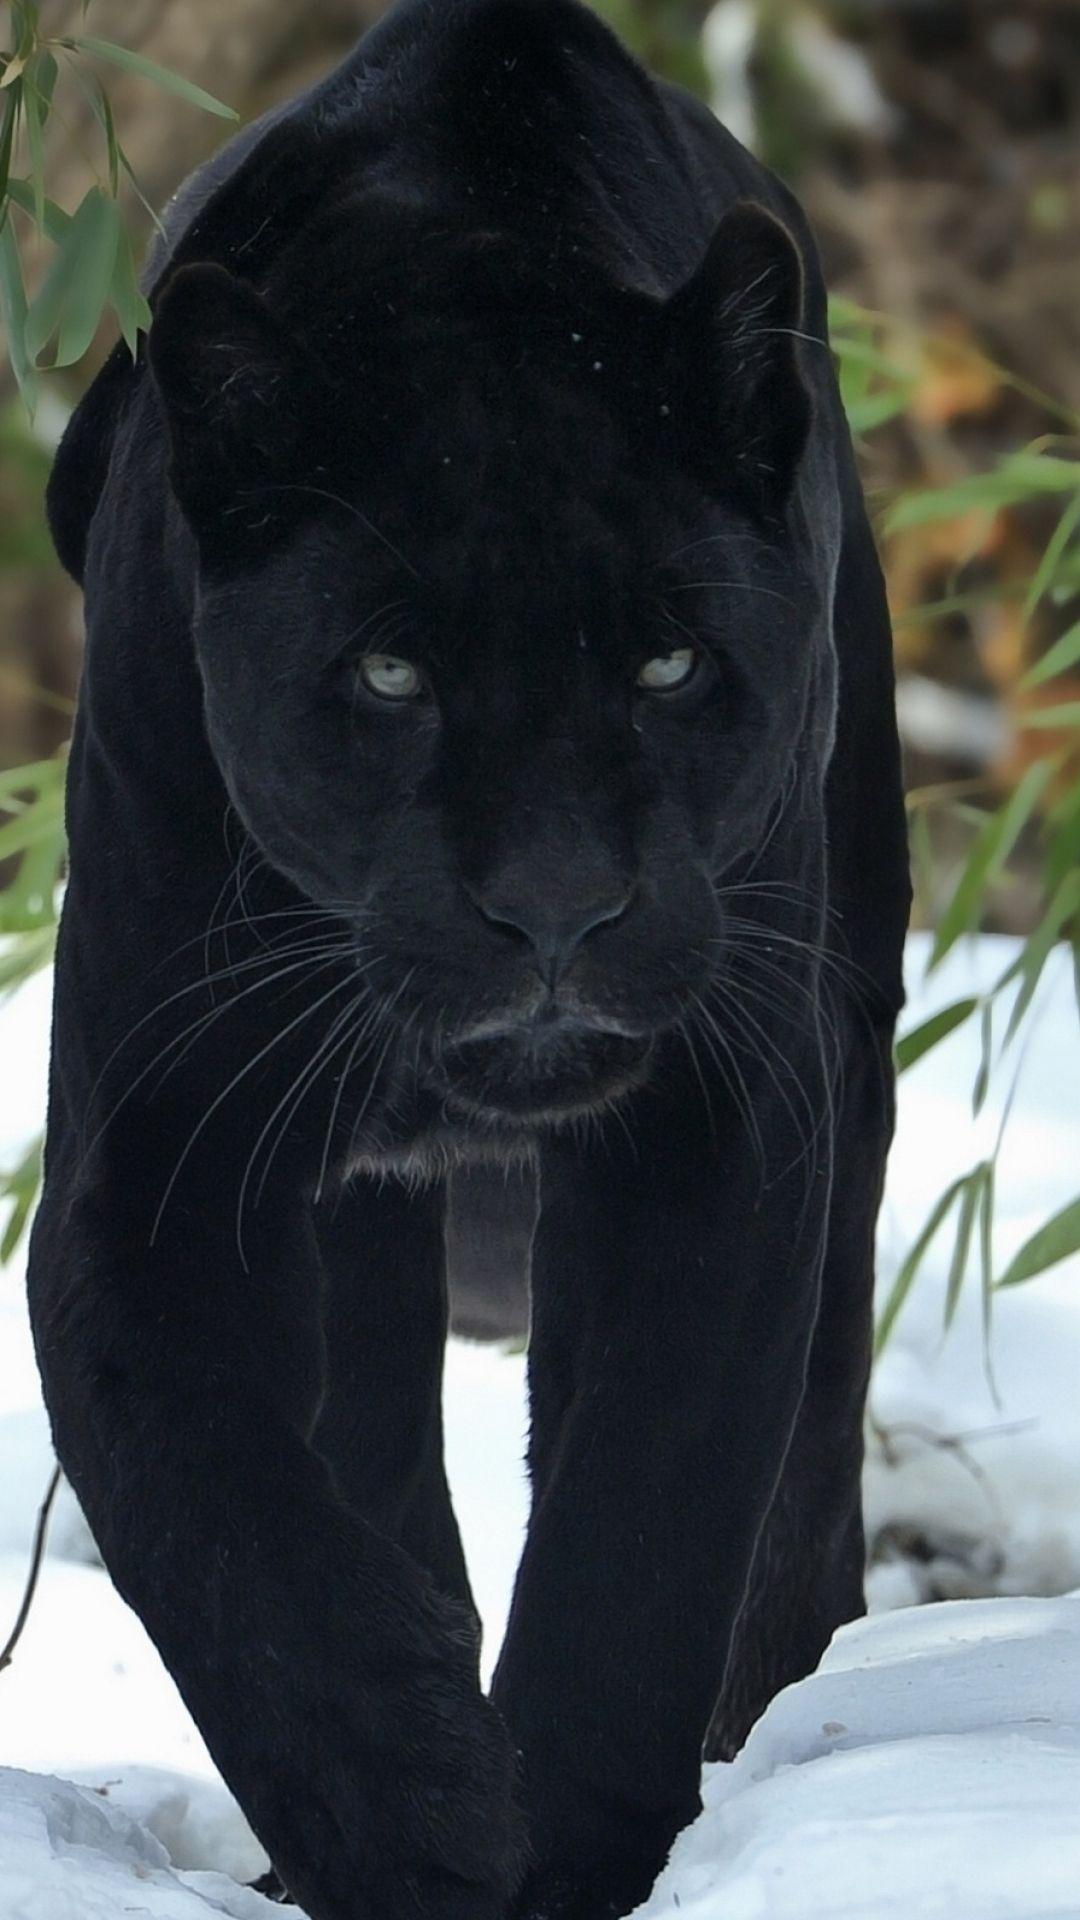 Cool Black Panther Animal Wallpapers